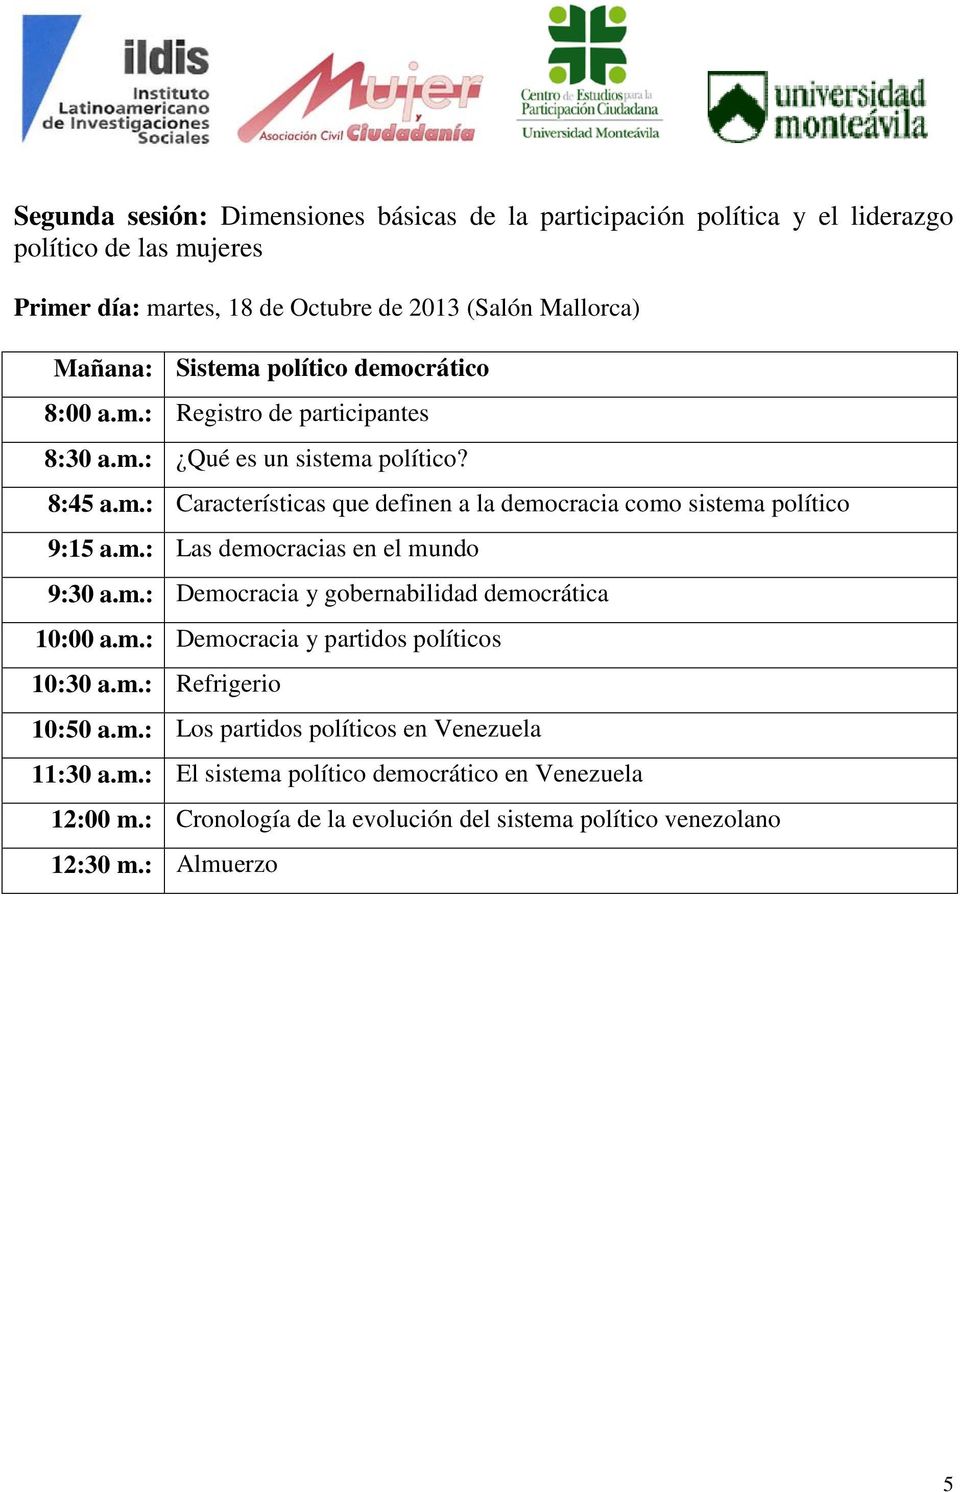 m.: Las democracias en el mundo 9:30 a.m.: Democracia y gobernabilidad democrática 10:00 a.m.: Democracia y partidos políticos 10:50 a.m.: Los partidos políticos en Venezuela 11:30 a.